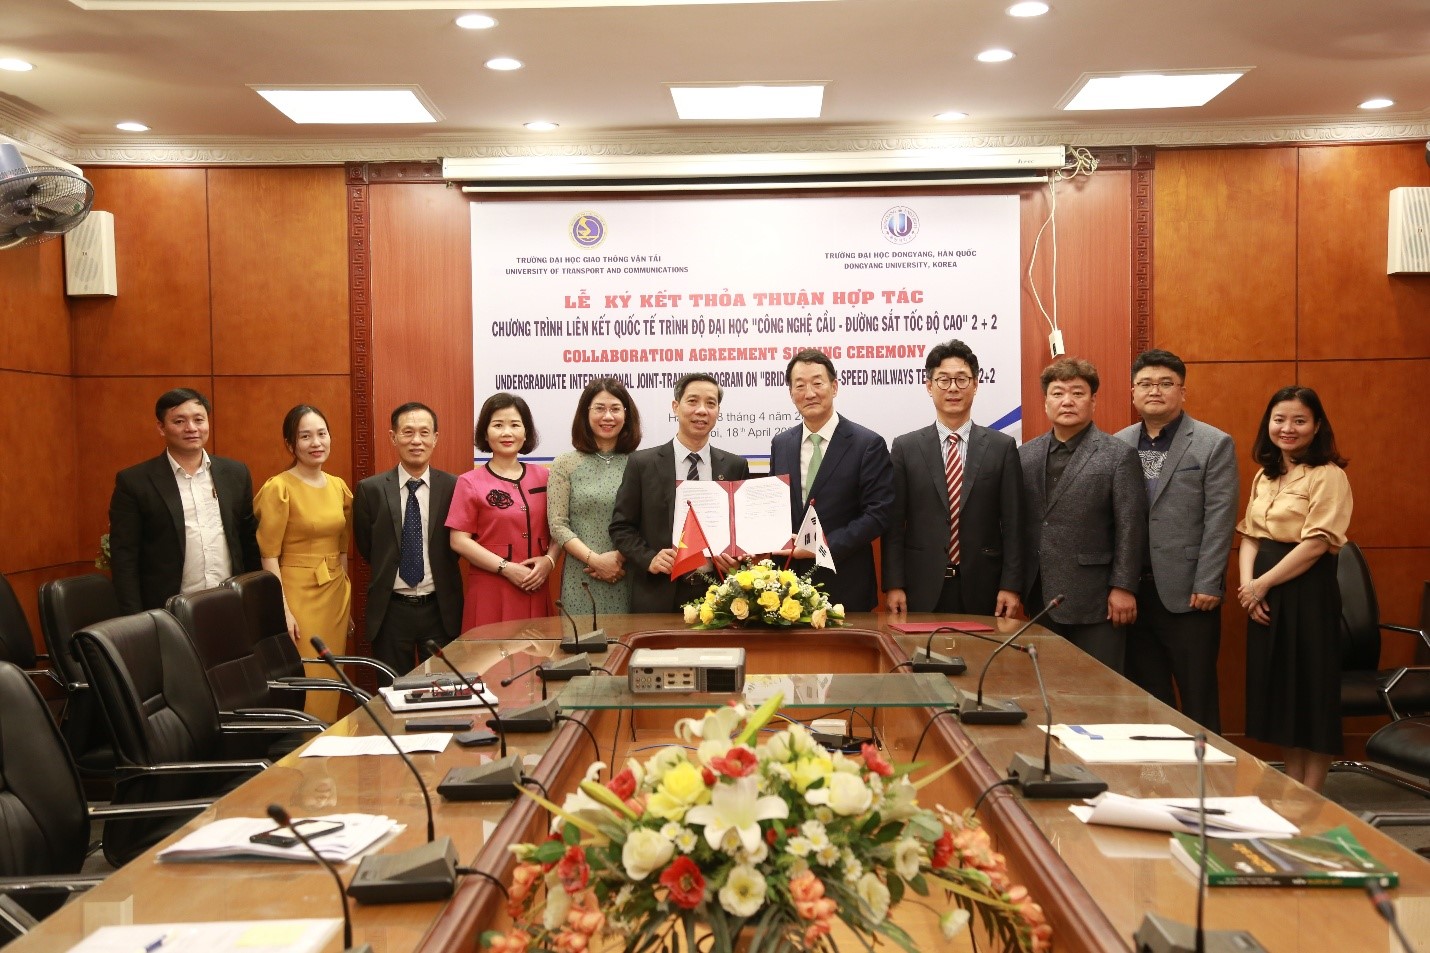 Ký kết thỏa thuận hợp đào tạo liên kết quốc tế giữa Trường Đại học Giao thông vận tải và Trường Đại học Dongyang, Hàn Quốc